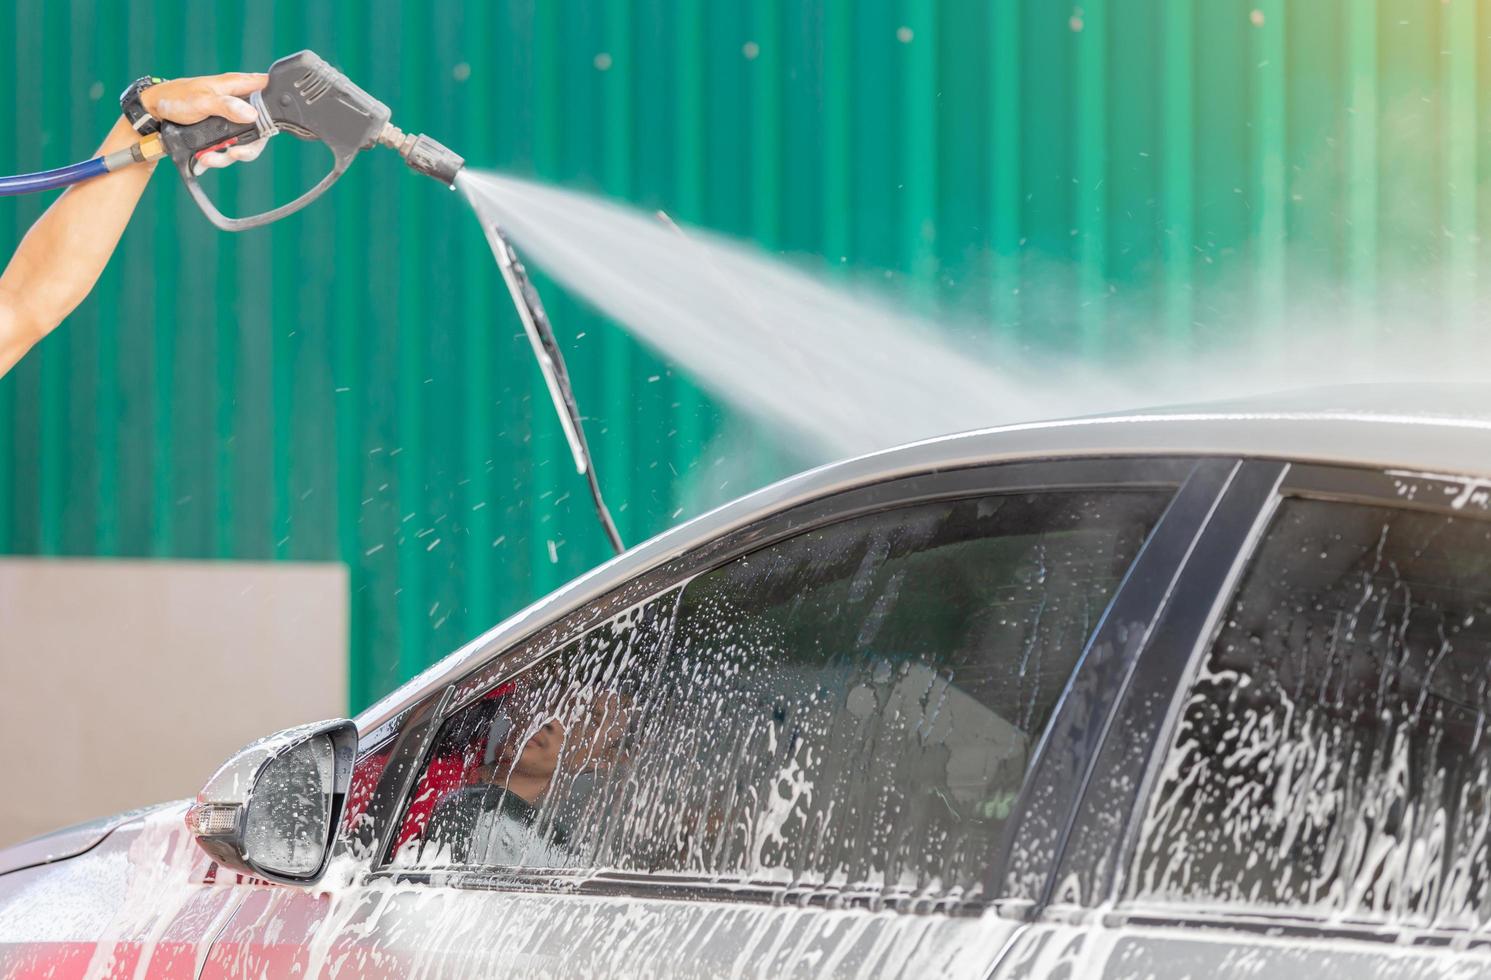 lavage de voiture avec savon et lavage à haute pression, concept d'entretien. photo